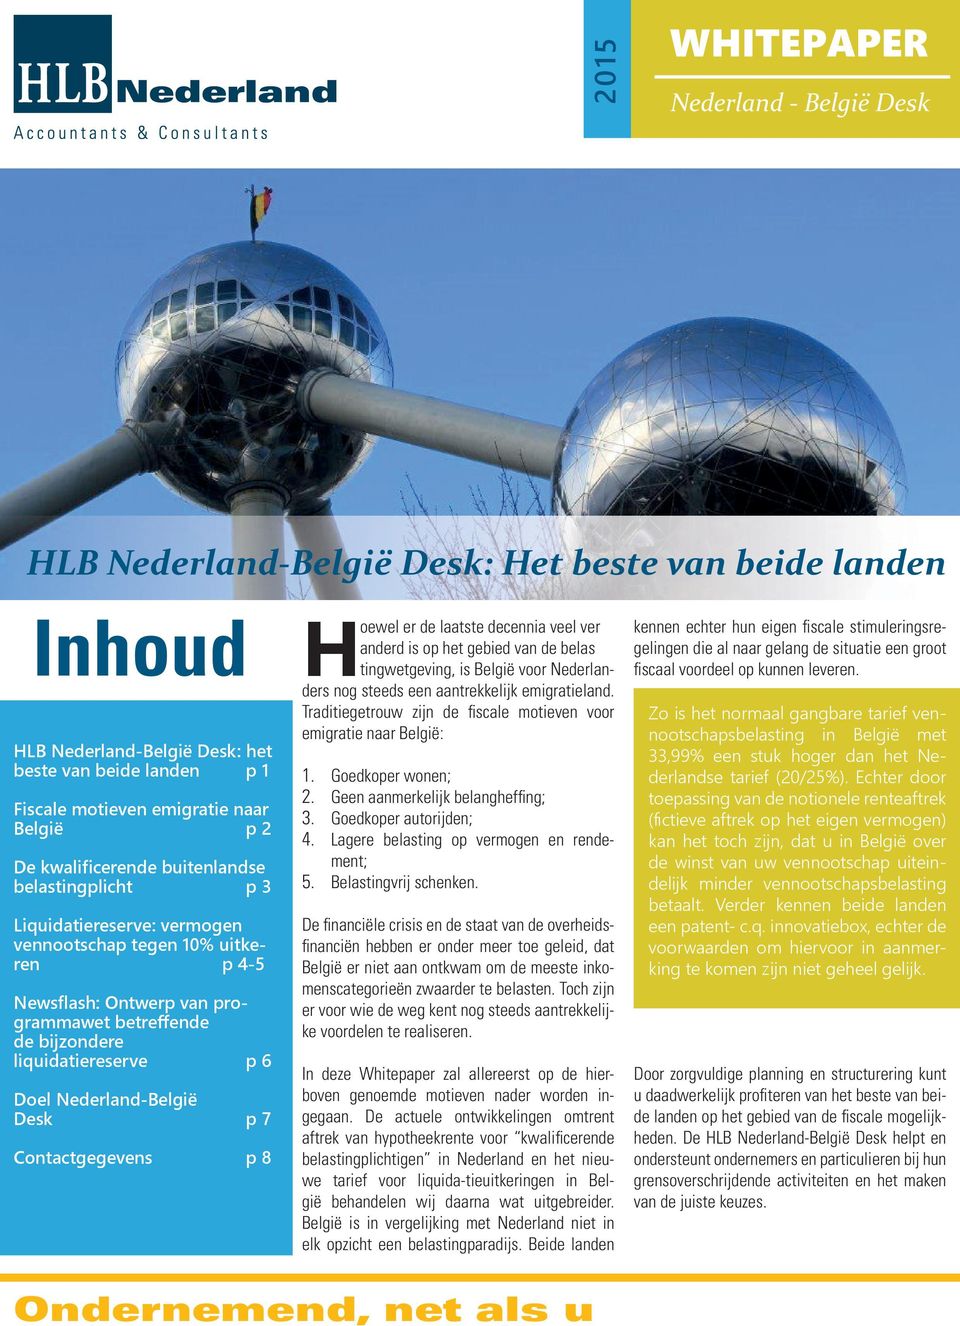 Nederland-België Desk p 7 Contactgegevens p 8 Hoewel er de laatste decennia veel ver anderd is op het gebied van de belas tingwetgeving, is België voor Nederlanders nog steeds een aantrekkelijk